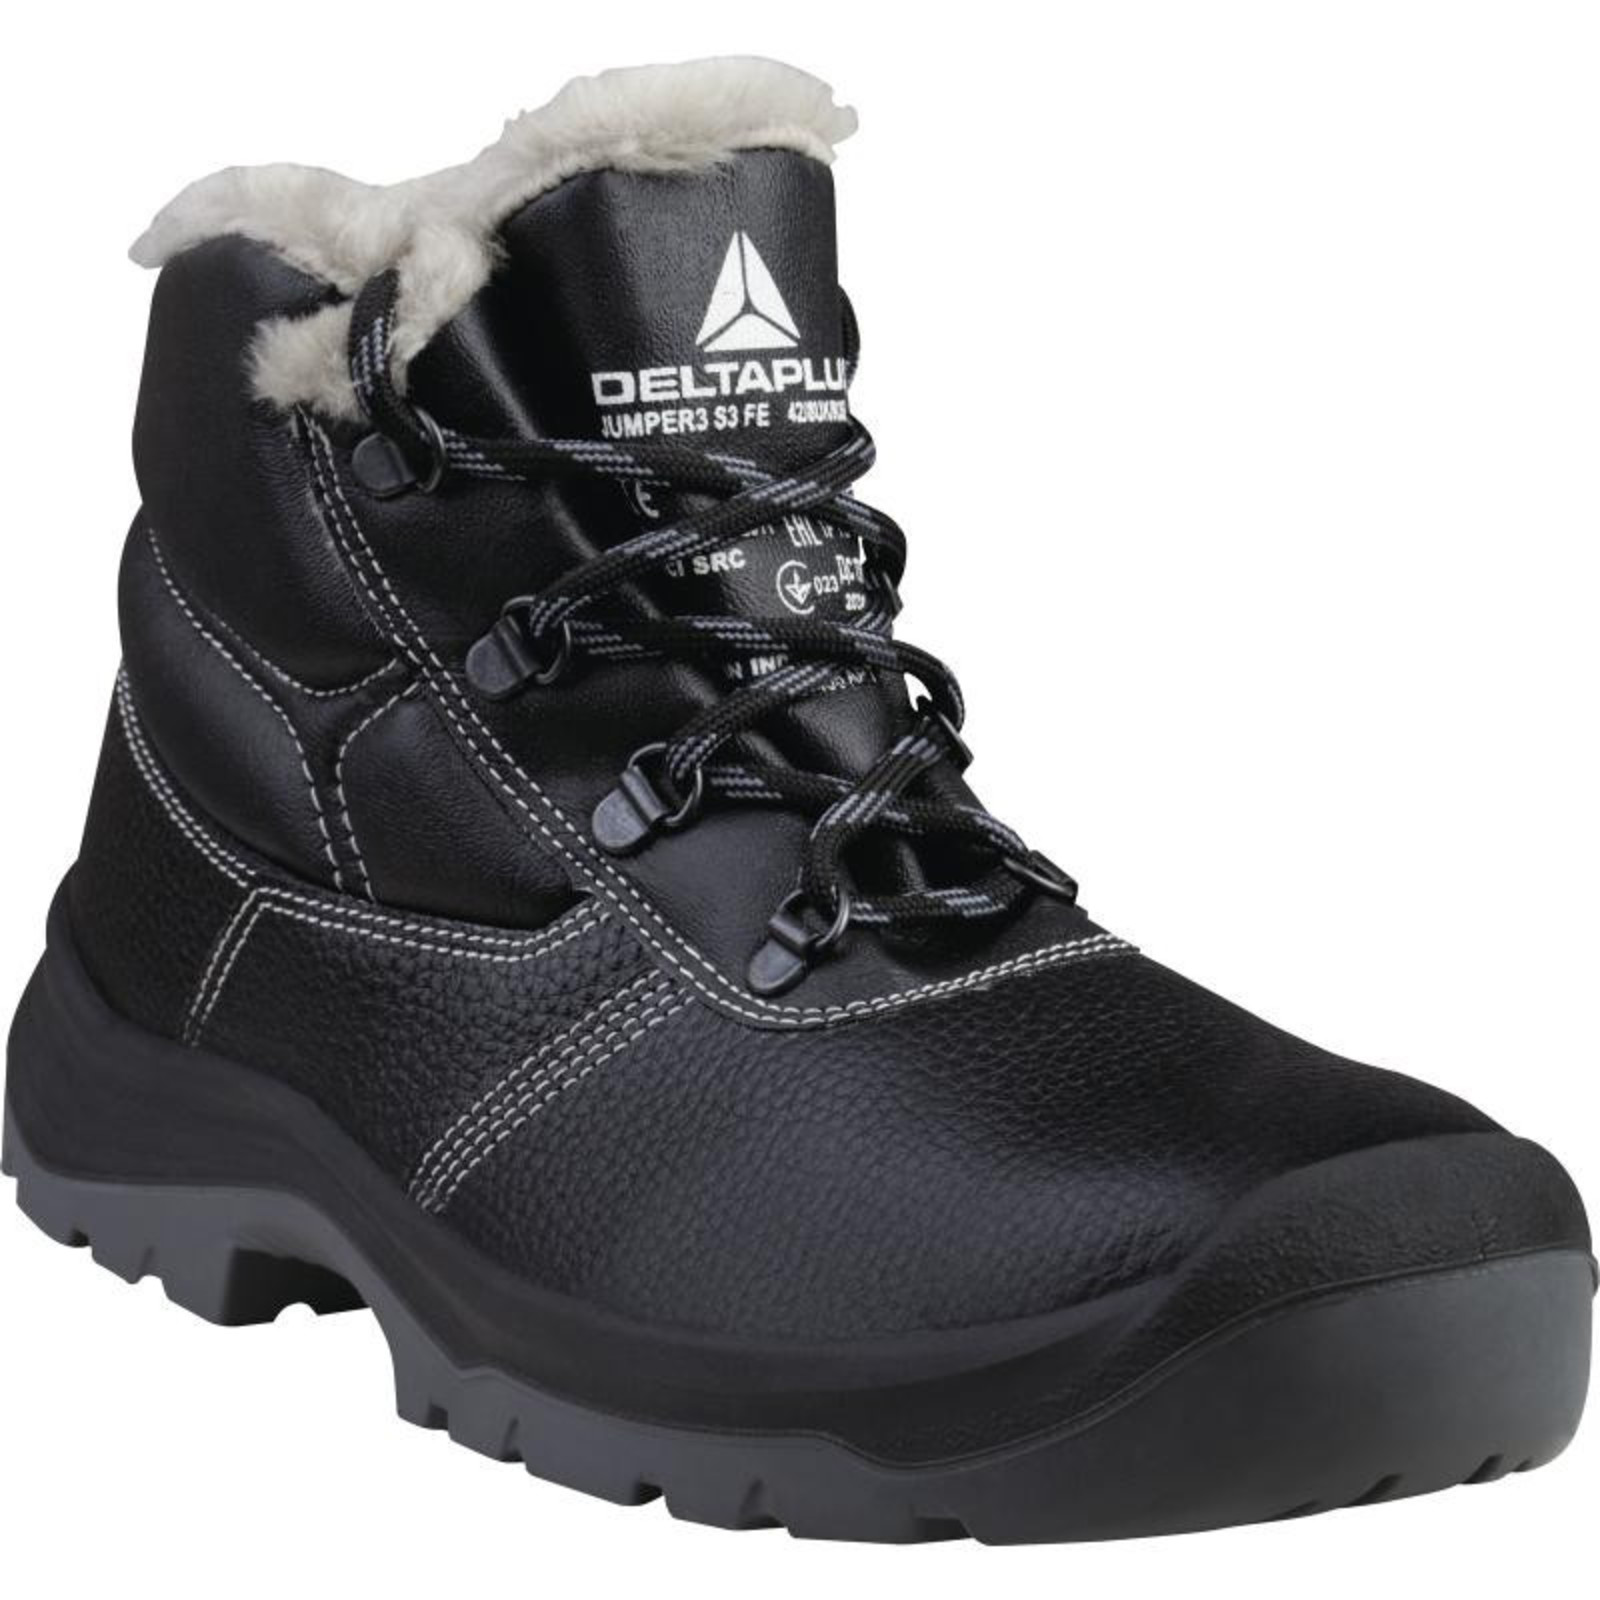 Zimná členková bezpečnostná obuv Delta Plus Jumper3 S3 - veľkosť: 47, farba: čierna